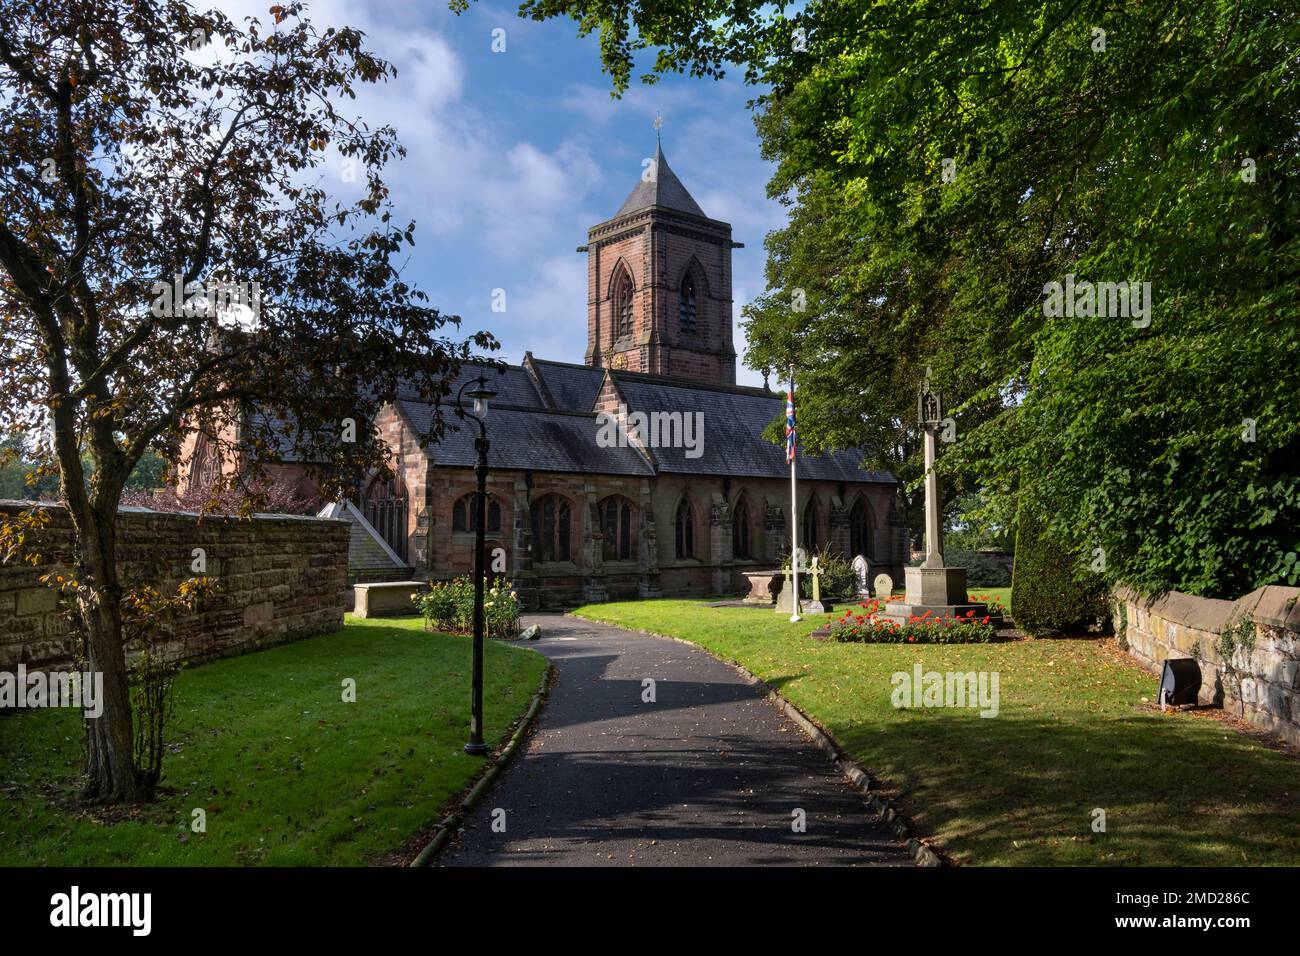 St Helen’s Parish Church in summer, Tarporley, Cheshire, England, UK Stock Photo